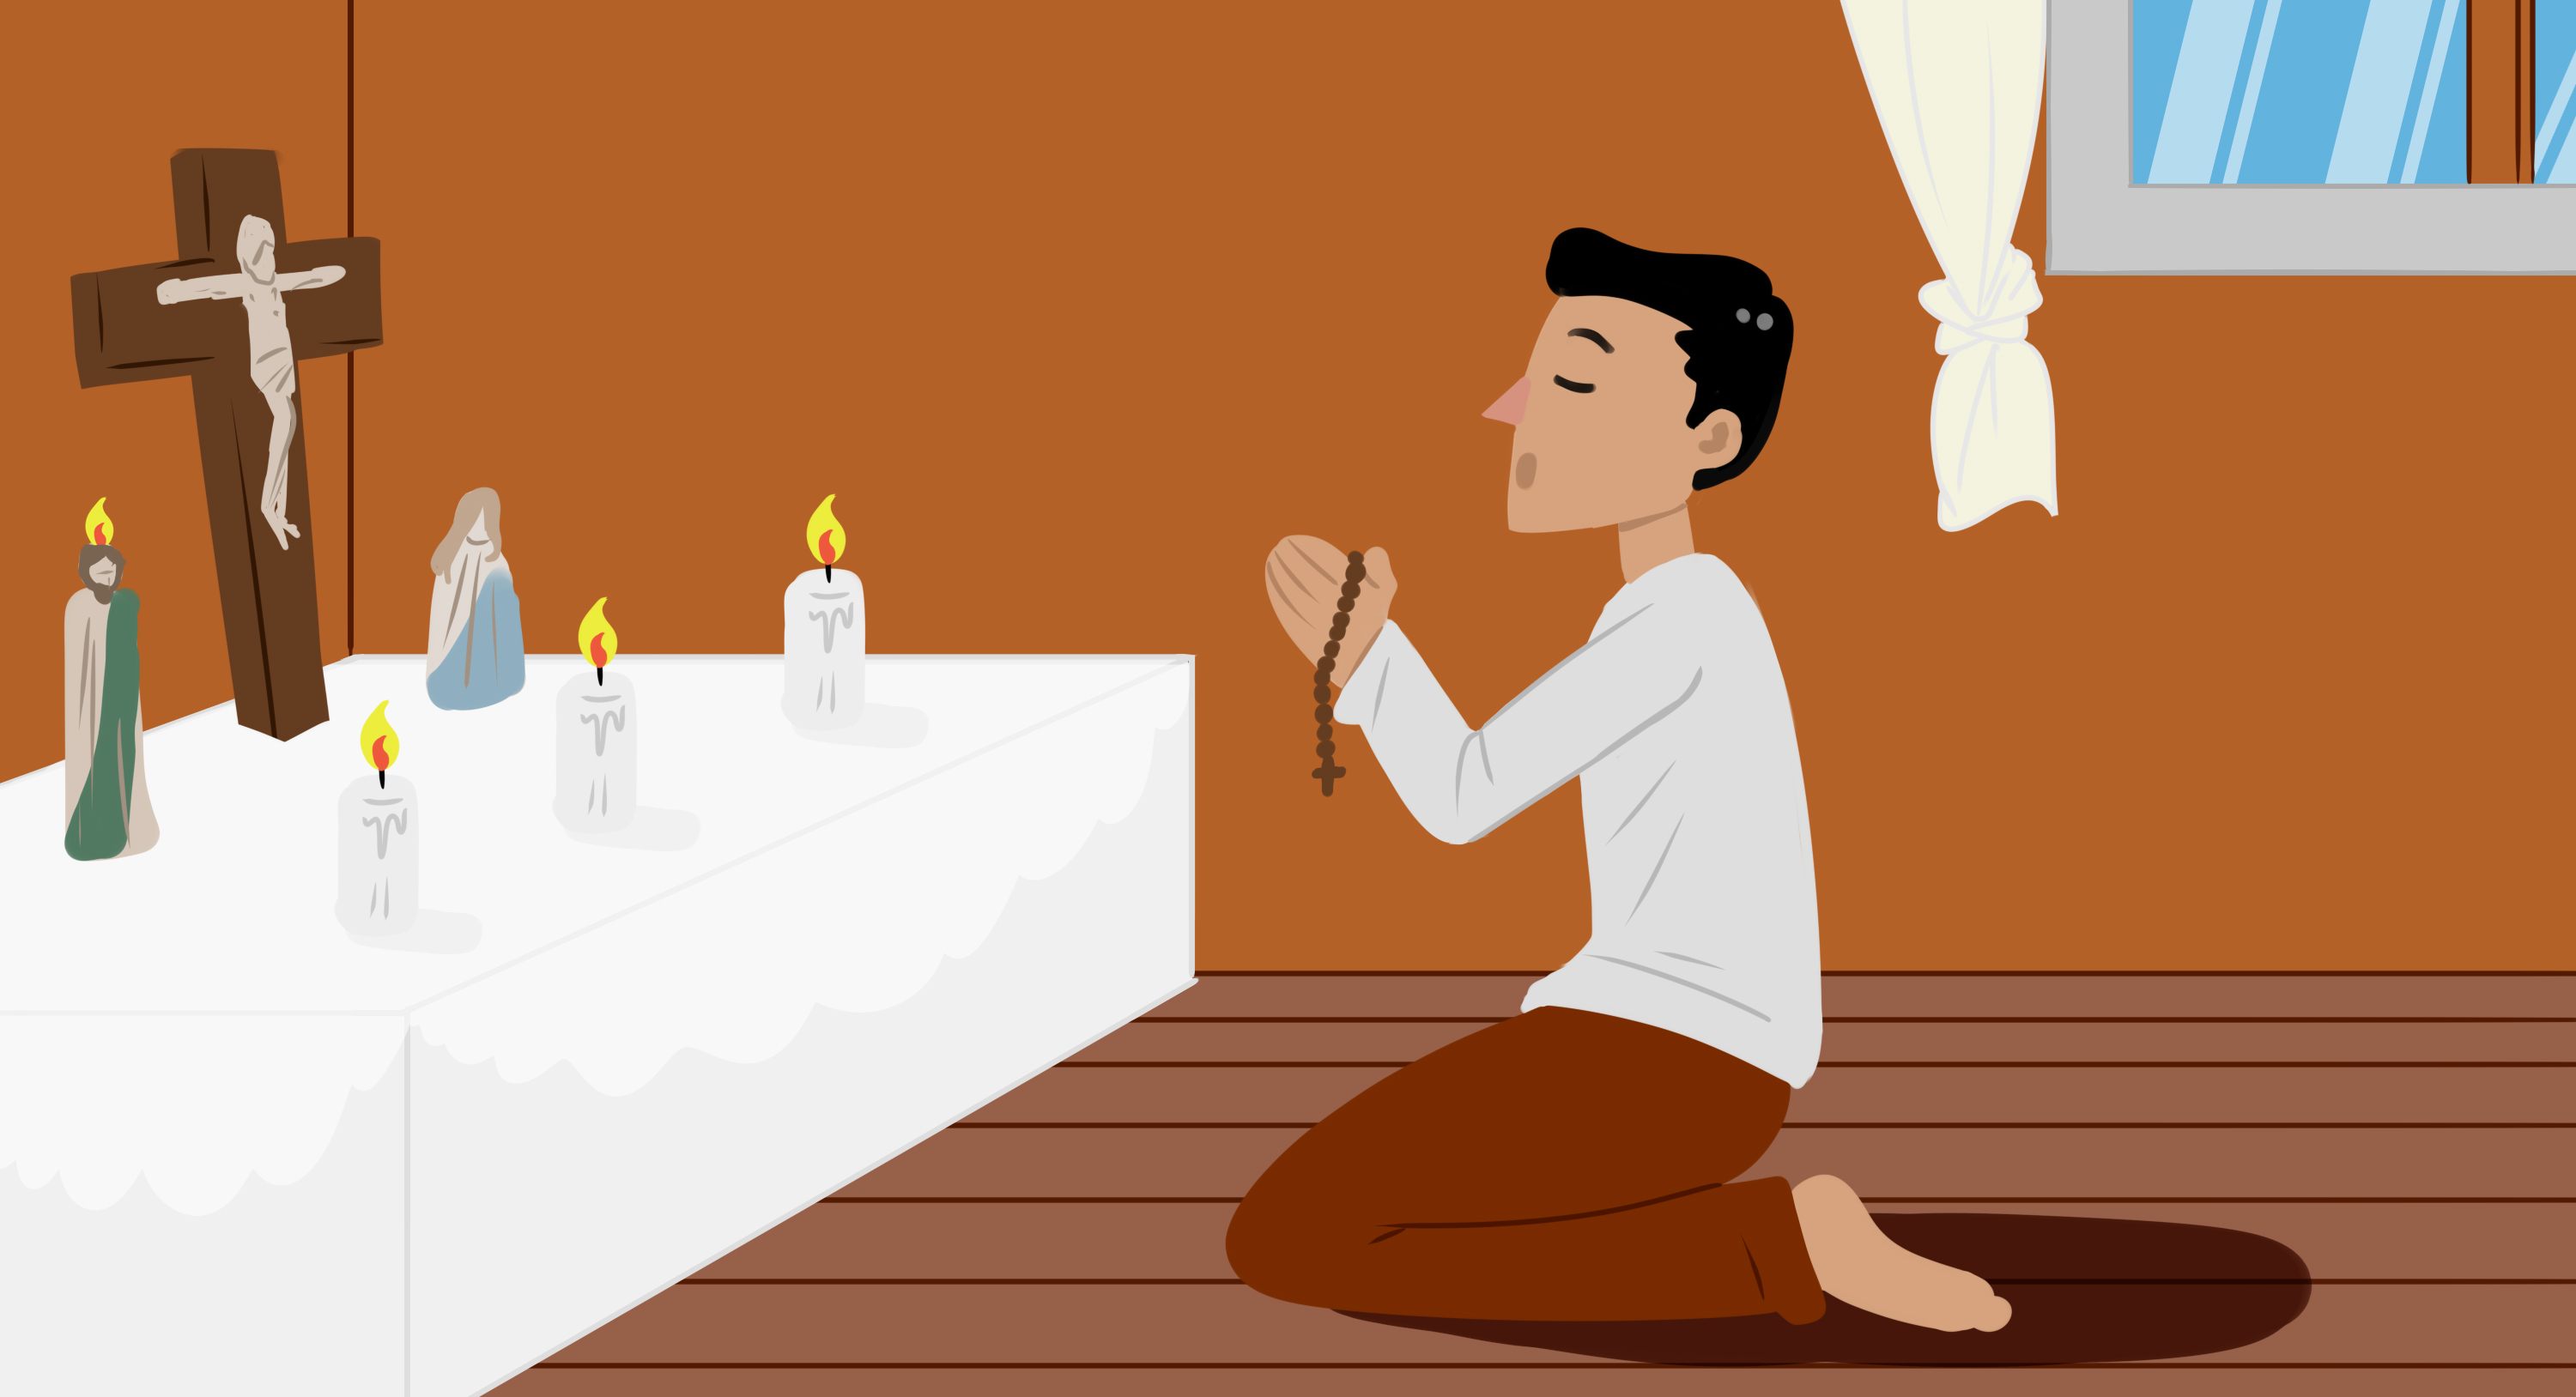 Personaje novohispano realizando una oración en su hogar con objetos religiosos.